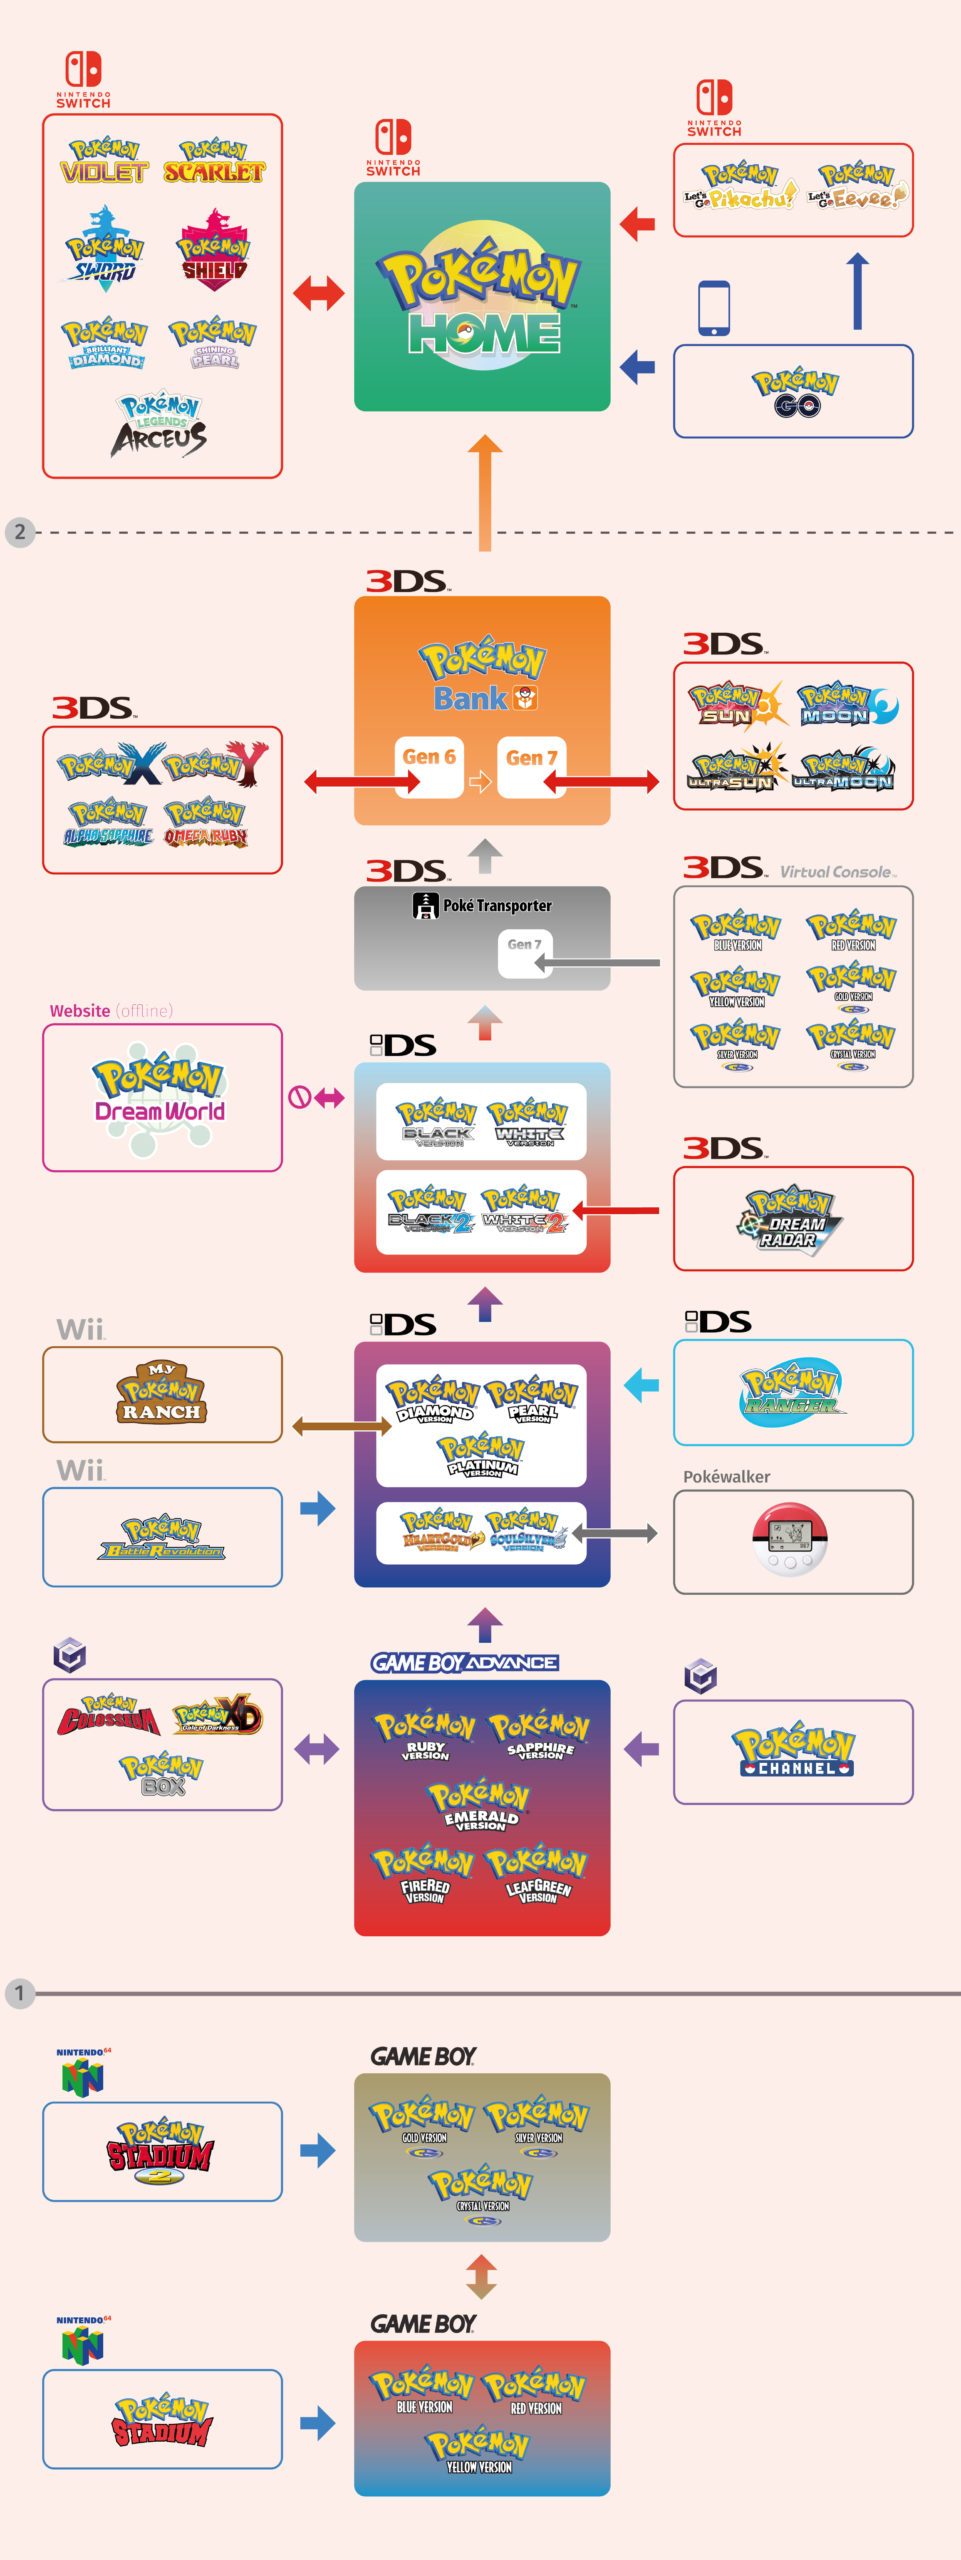 Grafik die die möglichen Transferoptionen zwischen den Pokémon Spielen zeigt. Pokémon Bank, Pokémon HOME. Pokemon BOX